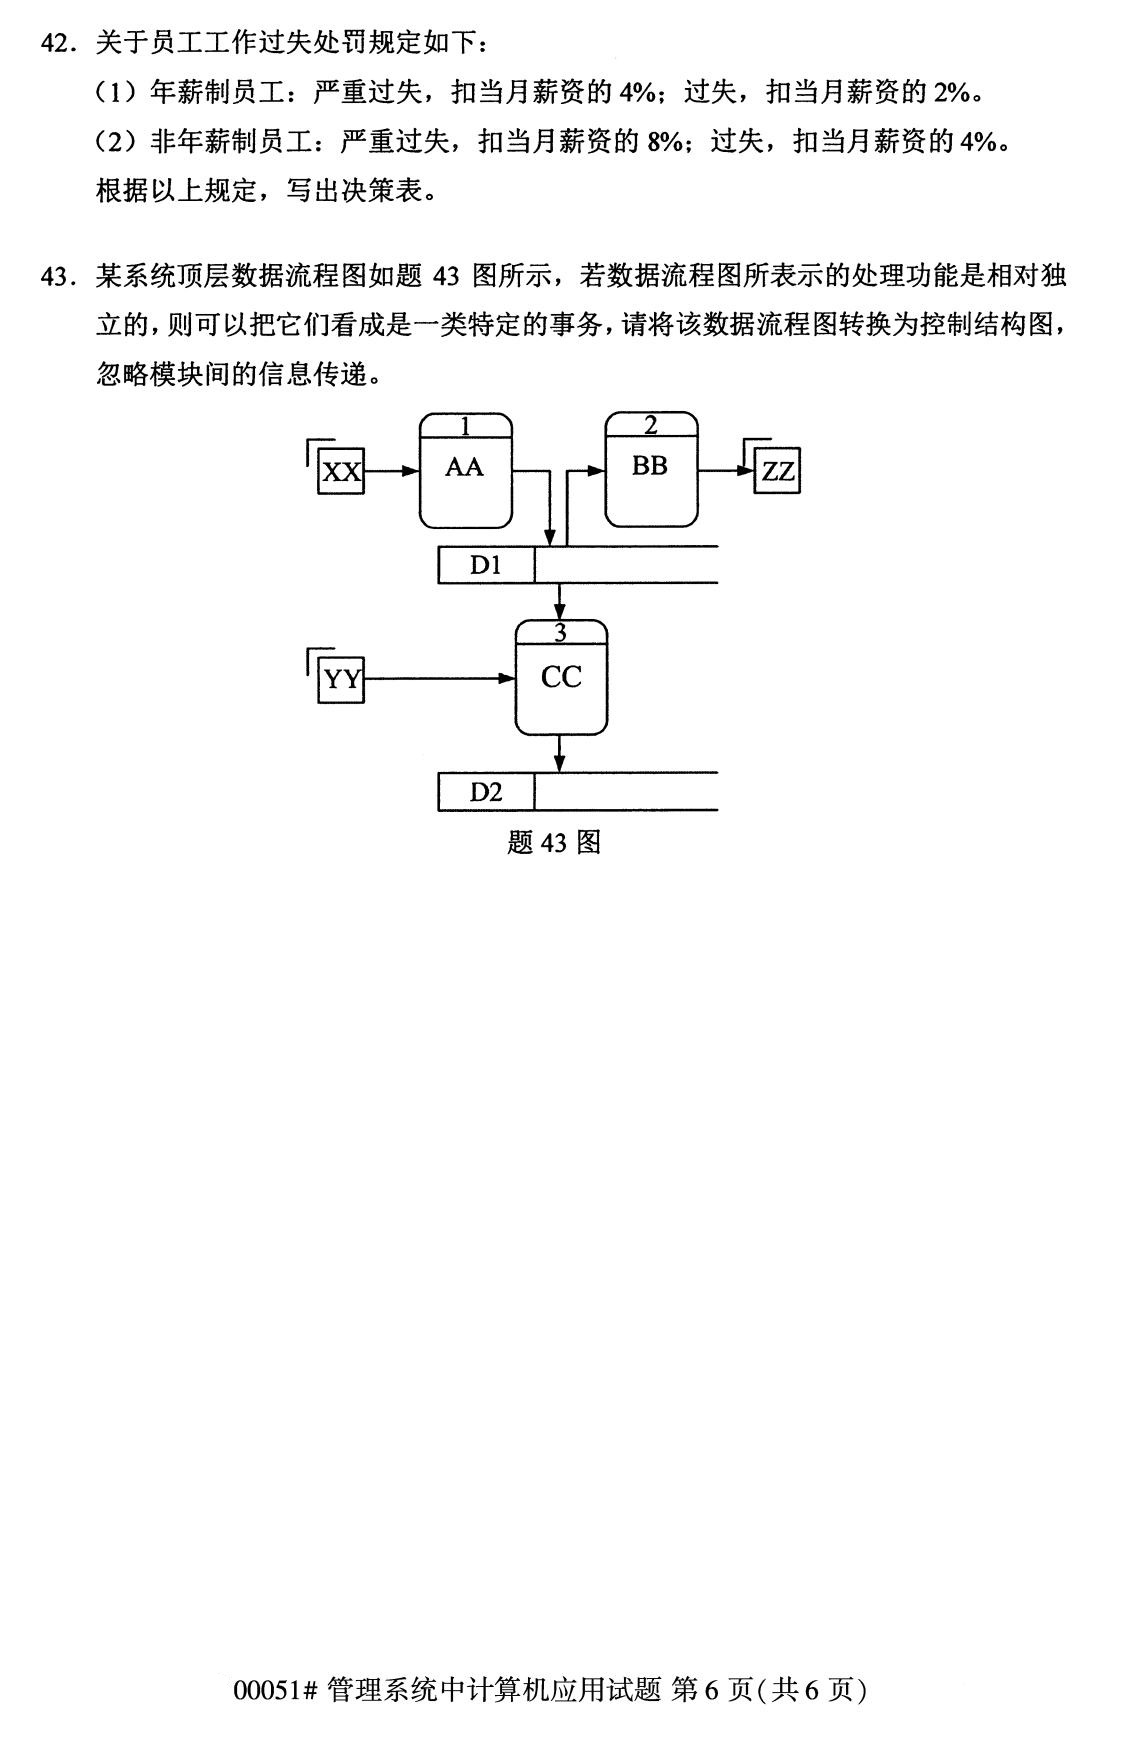 2020年8月广东省自学考试本科管理系统中计算机应用真题(图6)